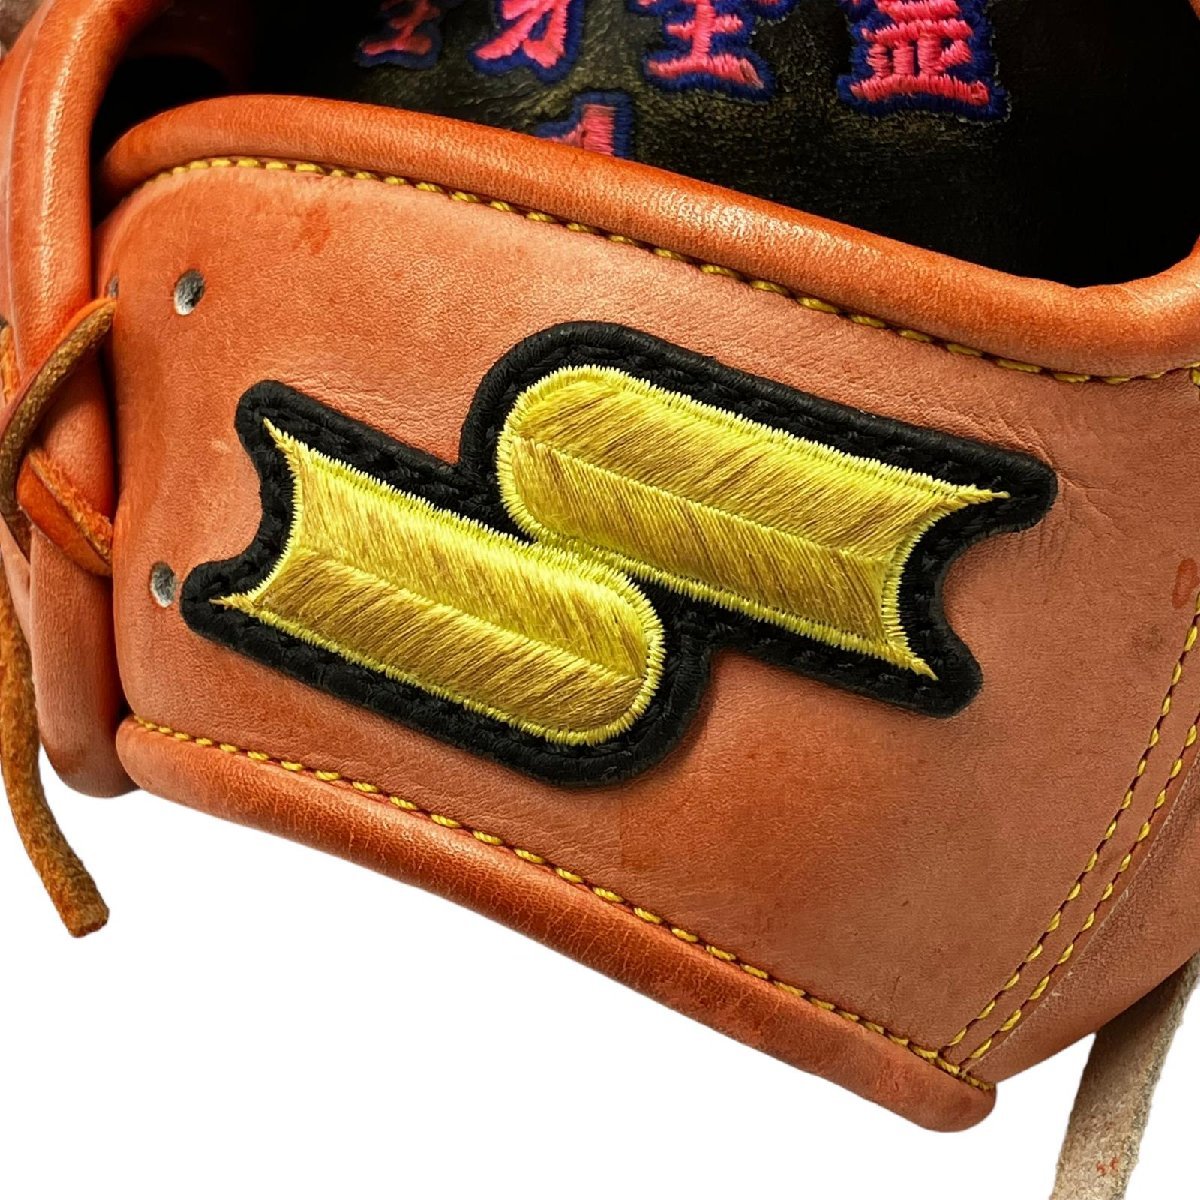 SSK エスエスケー スペシャルオーダーメイド 73-9 内側刺繍あり 野球 グローブ 硬式 外野手 オレンジ系 レザー_画像5